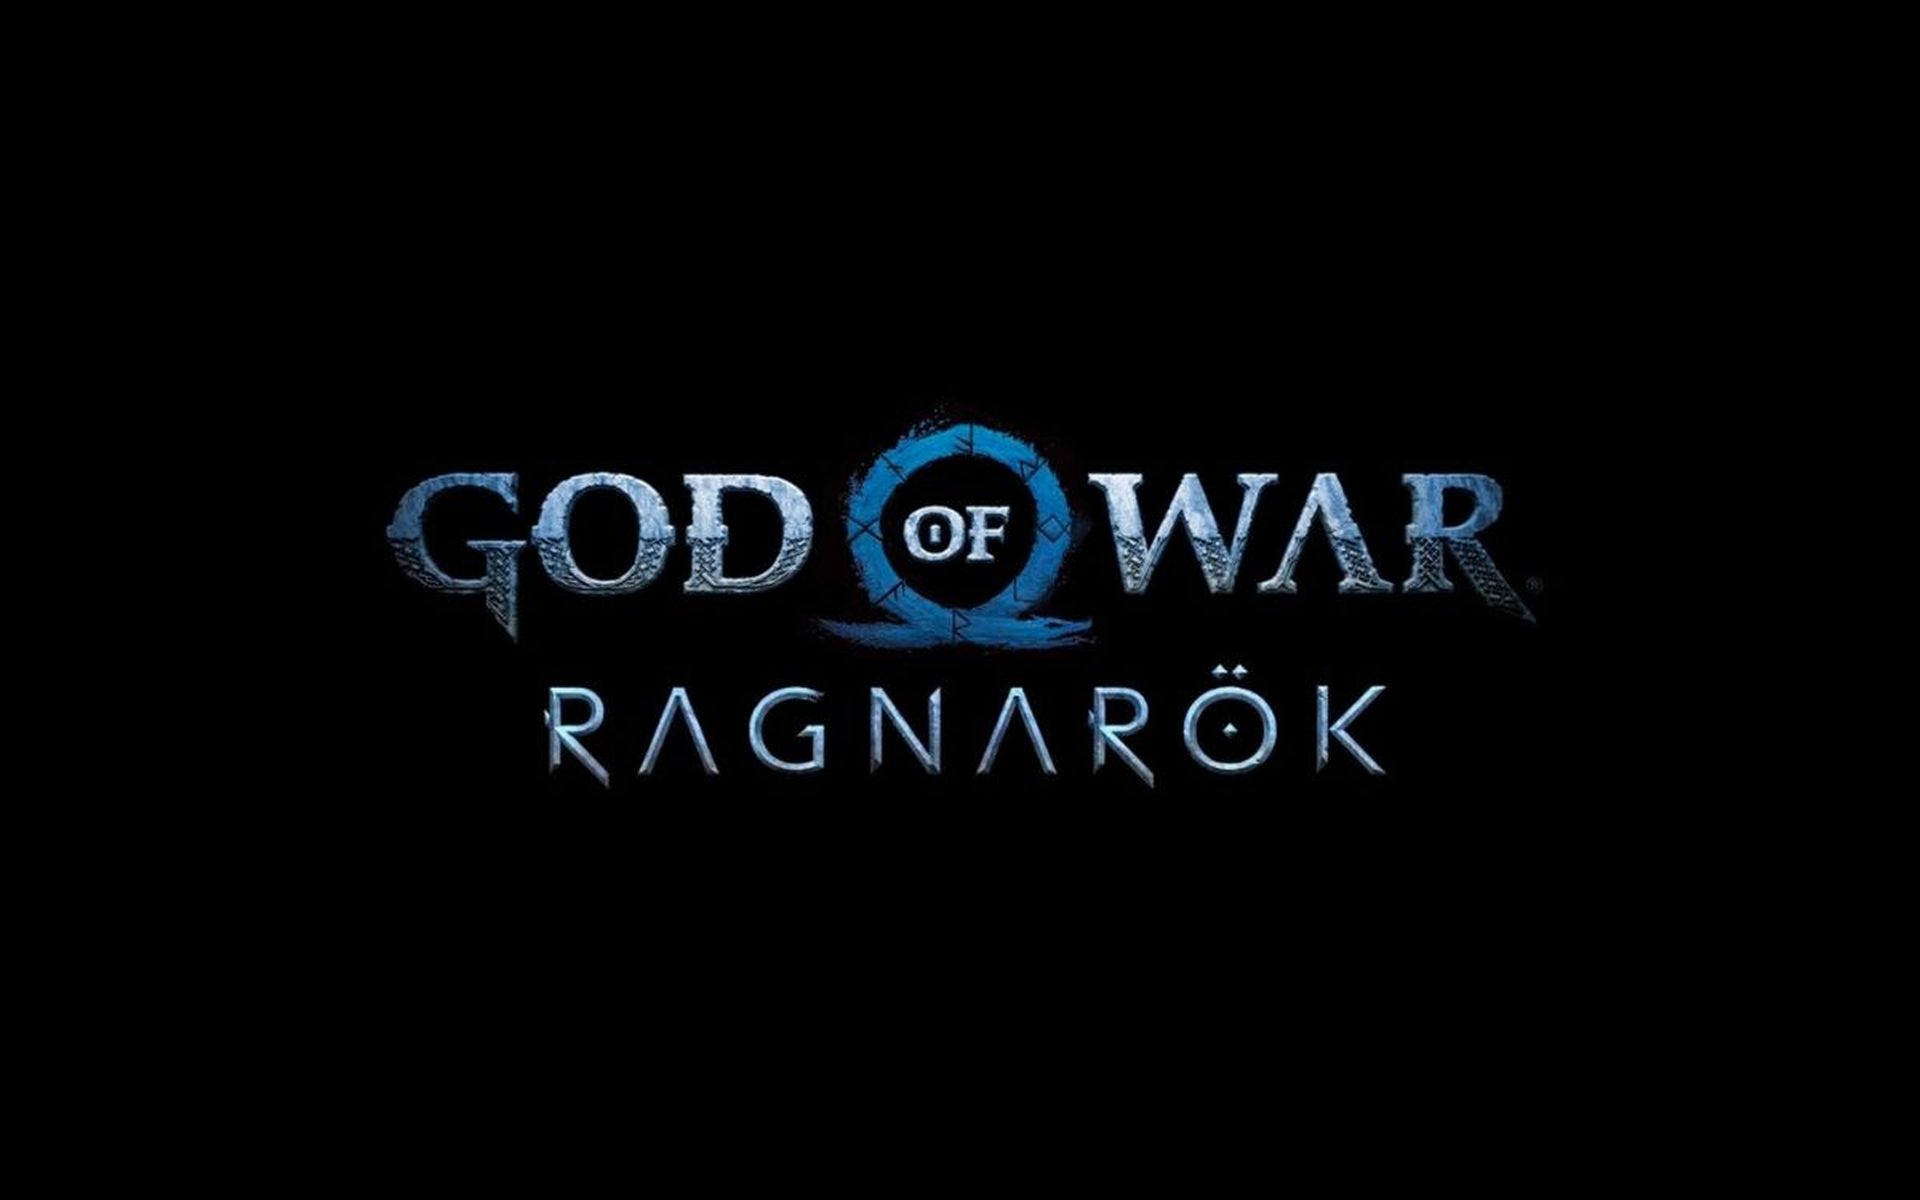 God of War Ragnarök pre-order, release date, trailer, and more